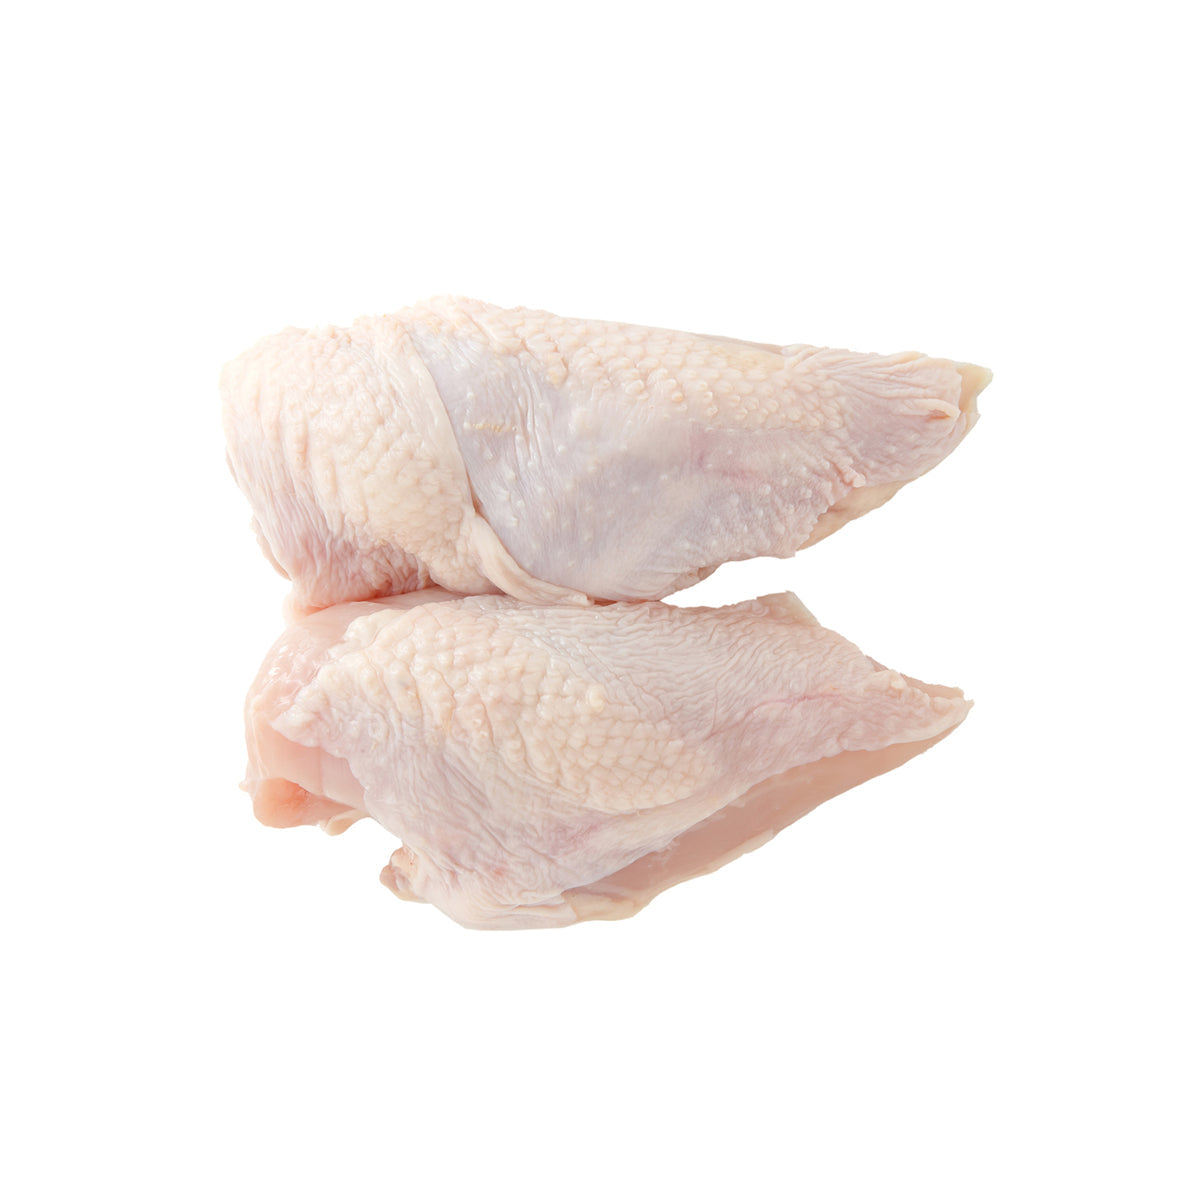 Senat Poultry ABF Halal Boneless Skin On Chicken Breasts